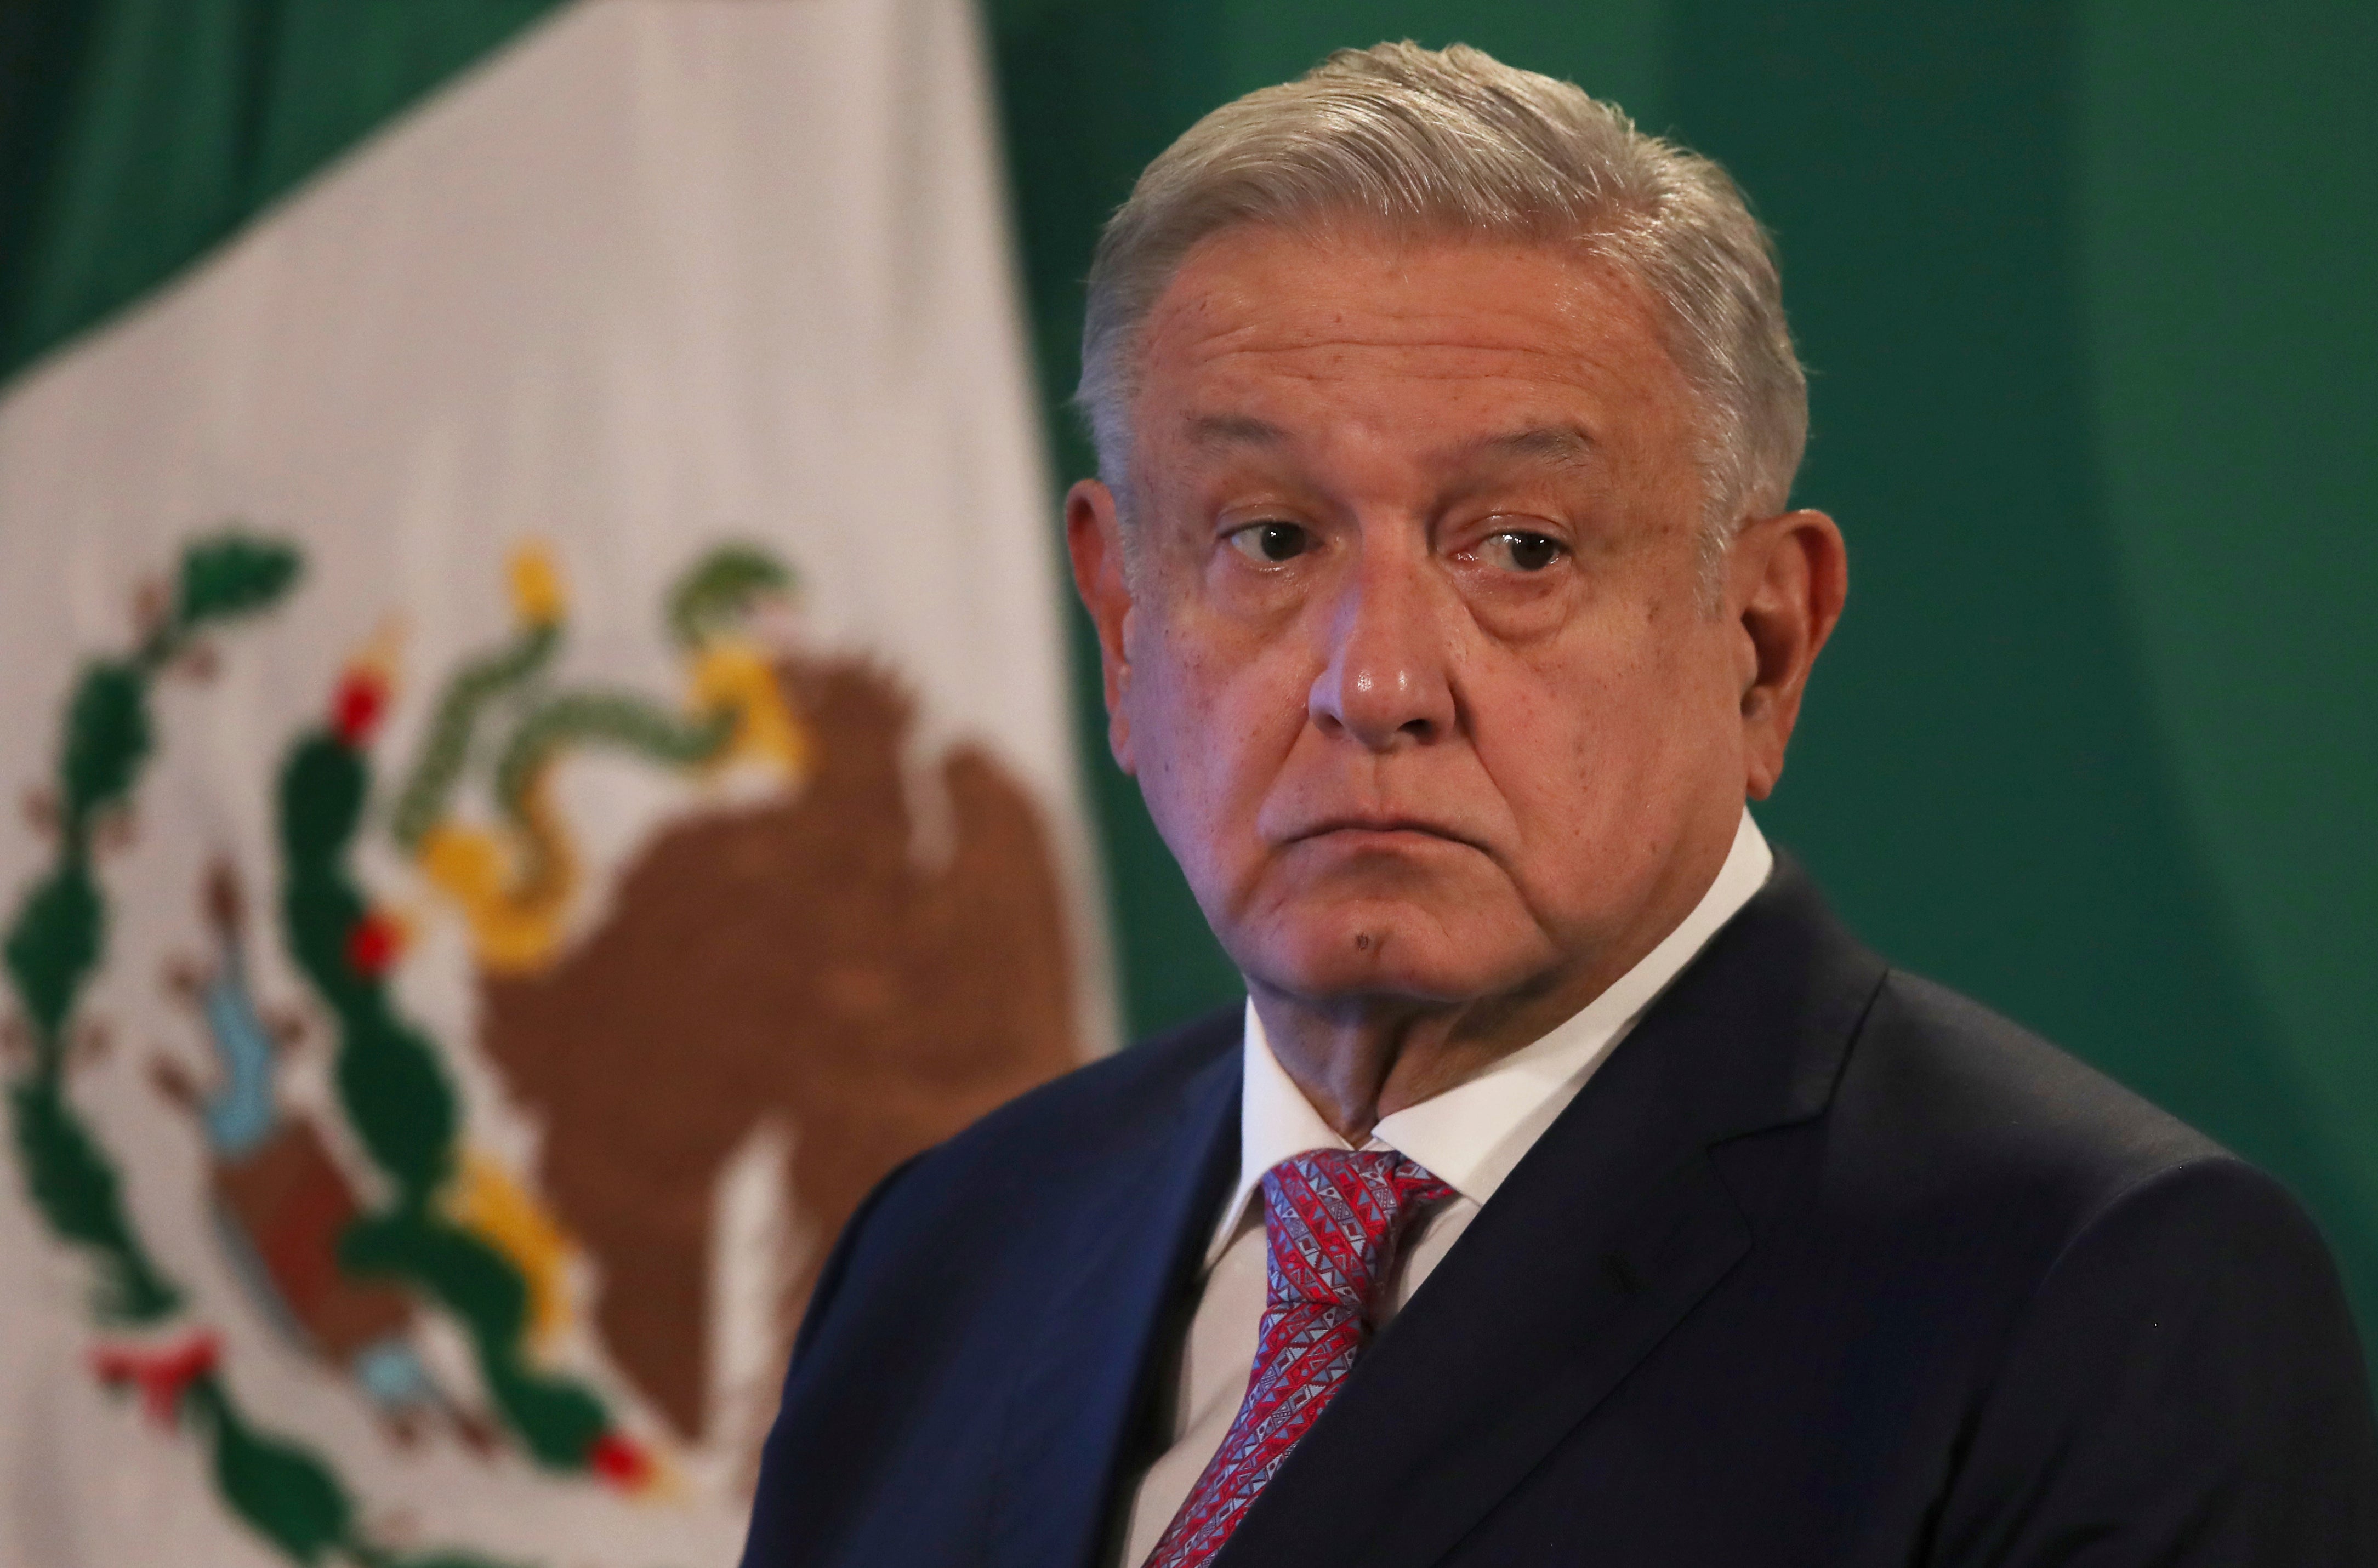 Virus Outbreak Mexico President